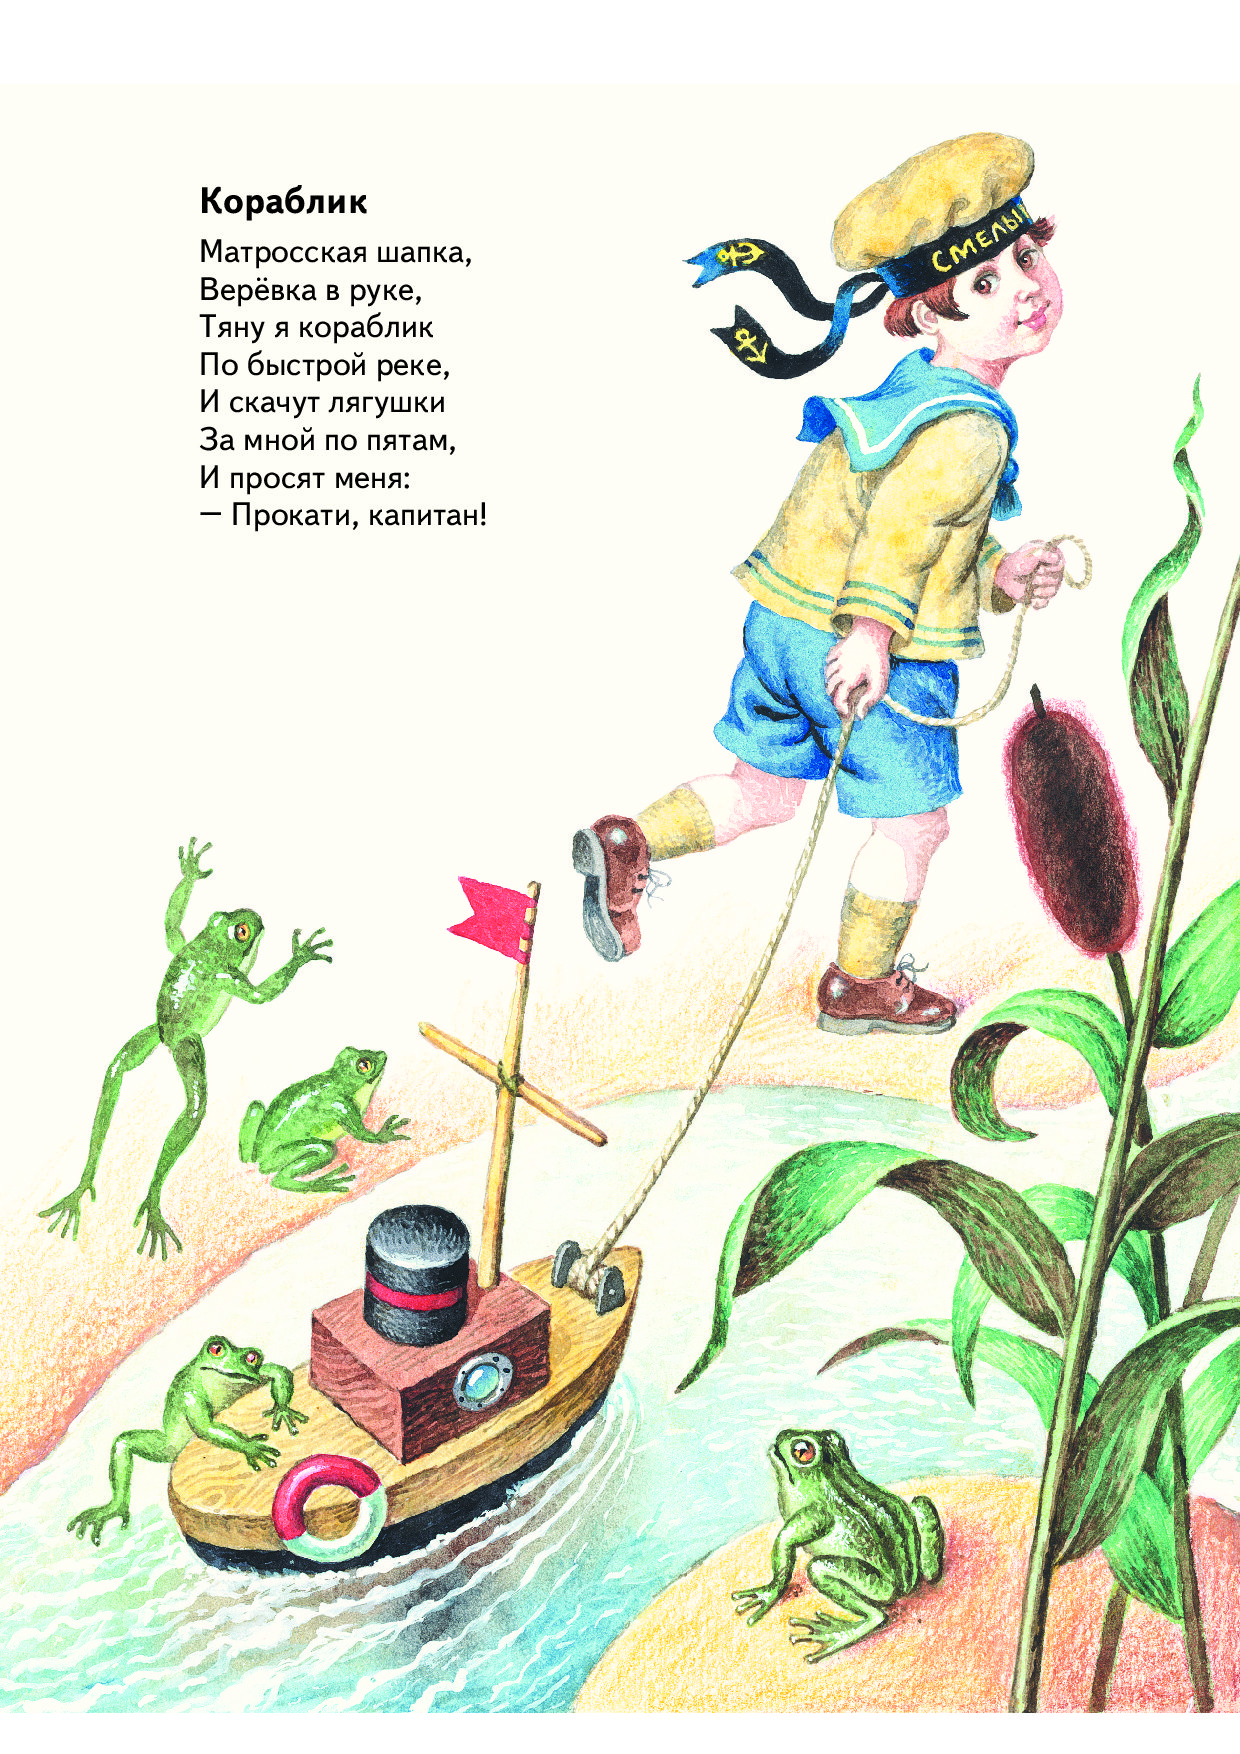 Рисунок к стихотворению агнии барто. Иллюстрации к стихам Агнии Барто. Иллюстрации к стихам Агнии Барто для детей.